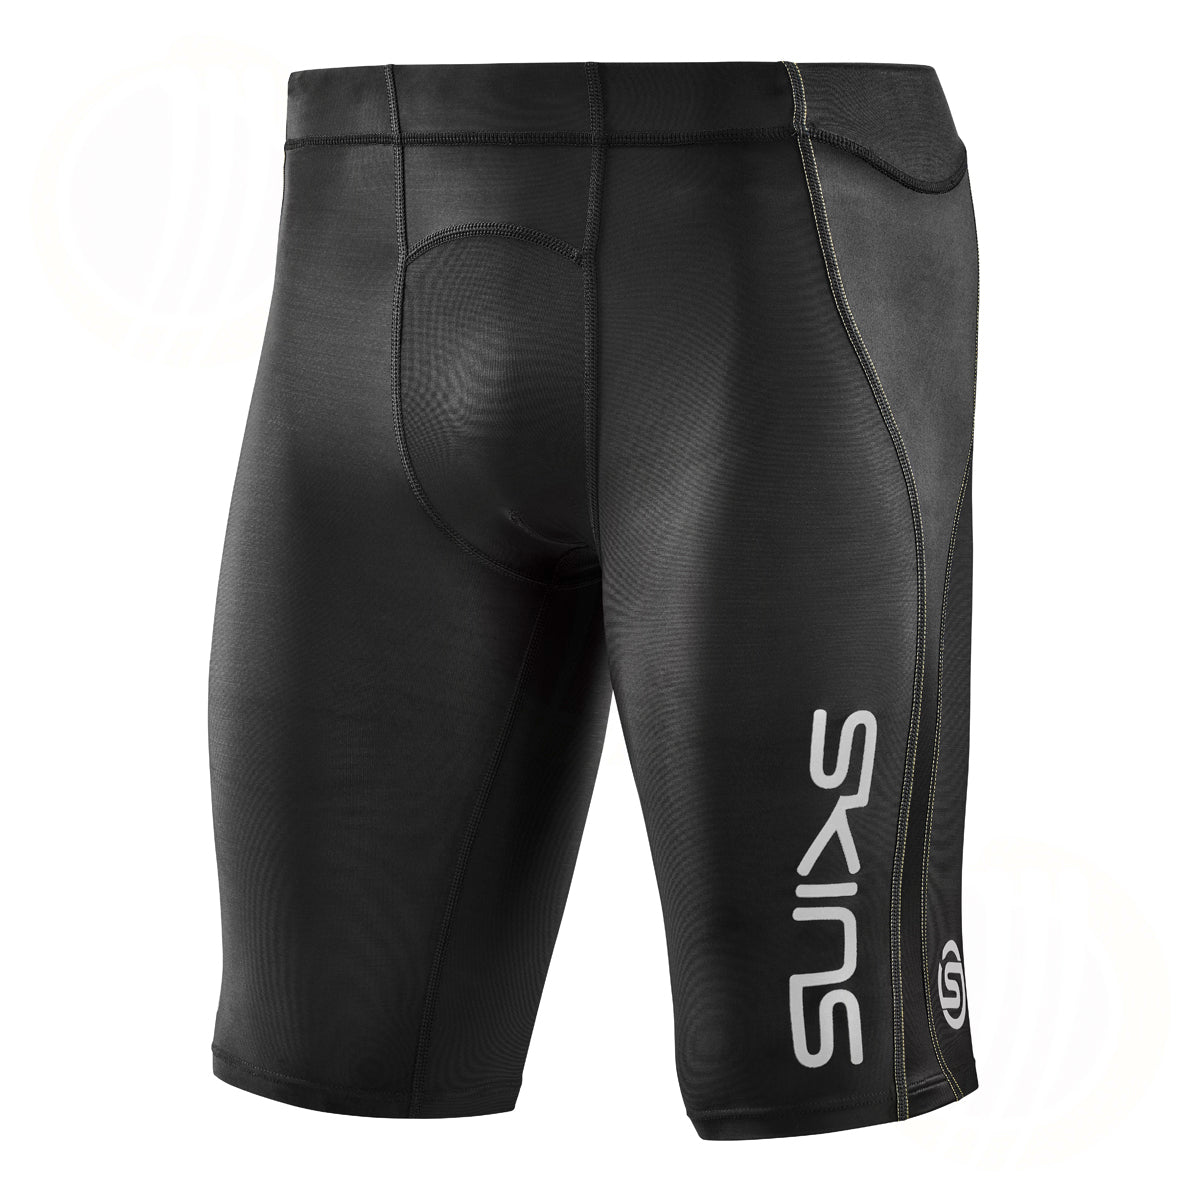 SKINS SERIES-1 Men's Compression Shorts White